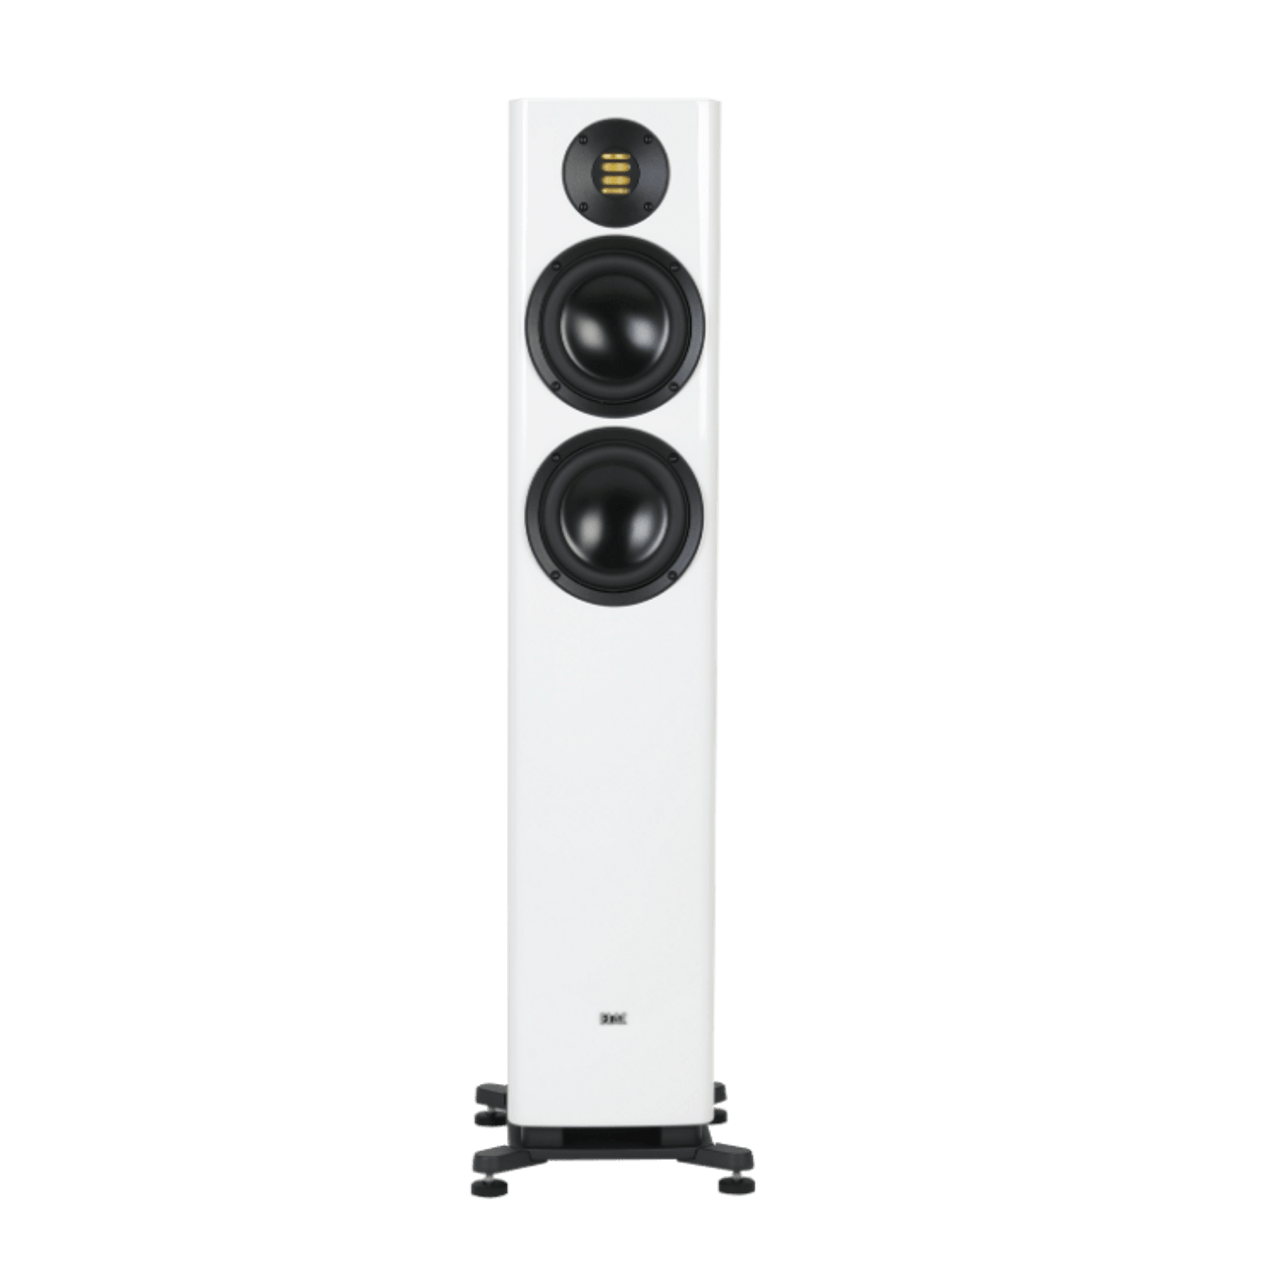 Solano Floorstanding Speakers – FS287